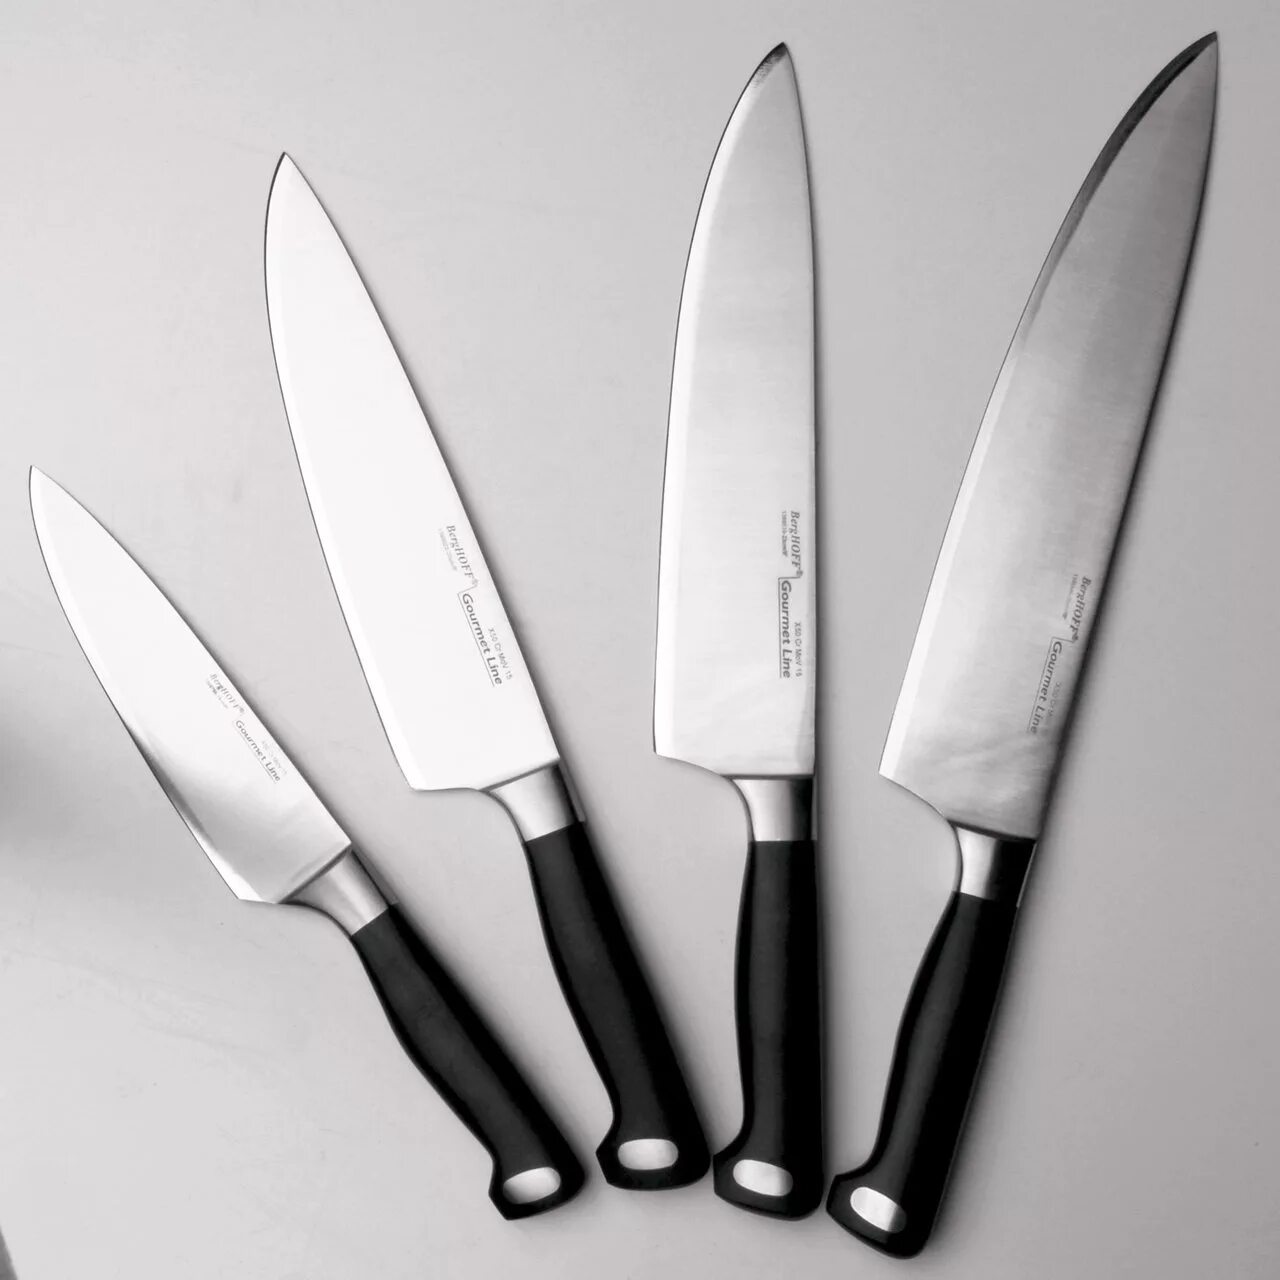 Кухонные ножи 20 см. Нож поварской BERGHOFF Gourmet. Tojiro Julia Vysotskaya professional Pro Дамаск. Нож поварской "Gourmet", 20 см. BERGHOFF нож разделочный Gourmet 20 см.